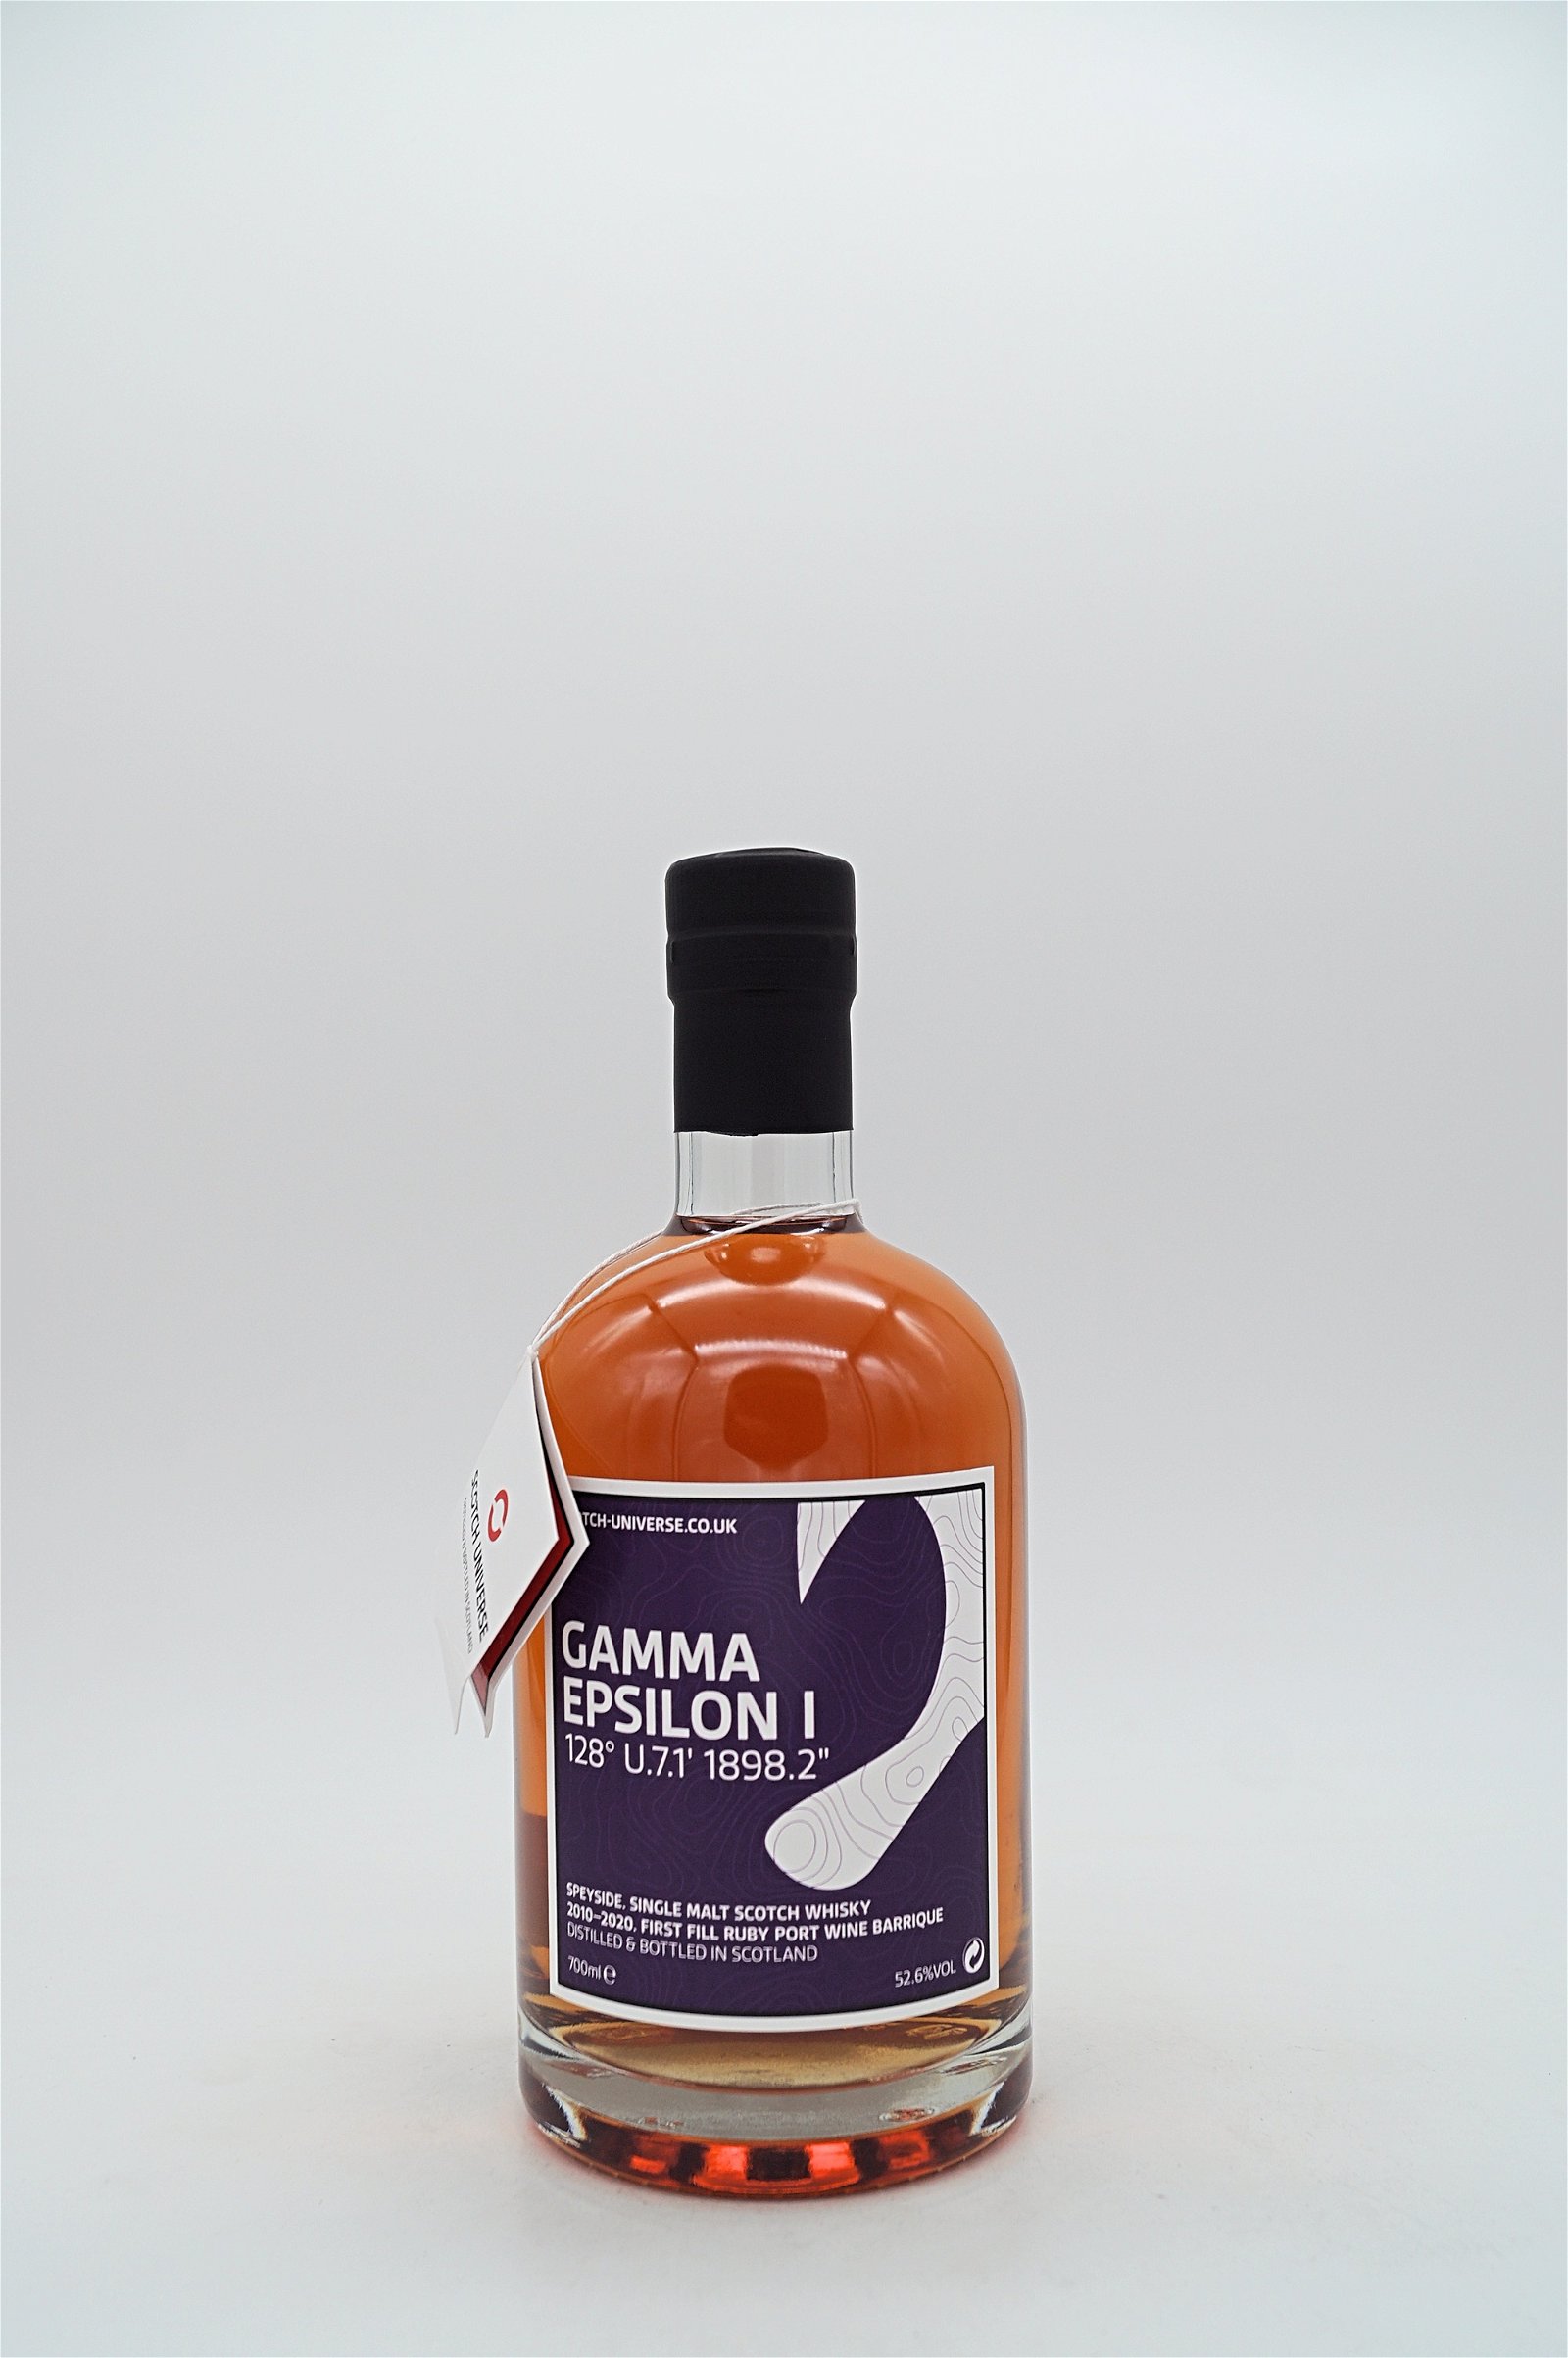 Scotch Universe Gamma Epsilon 1 Ruby Port Wine Barrique 2010/2020 Speyside Single Malt Scotch Whisky